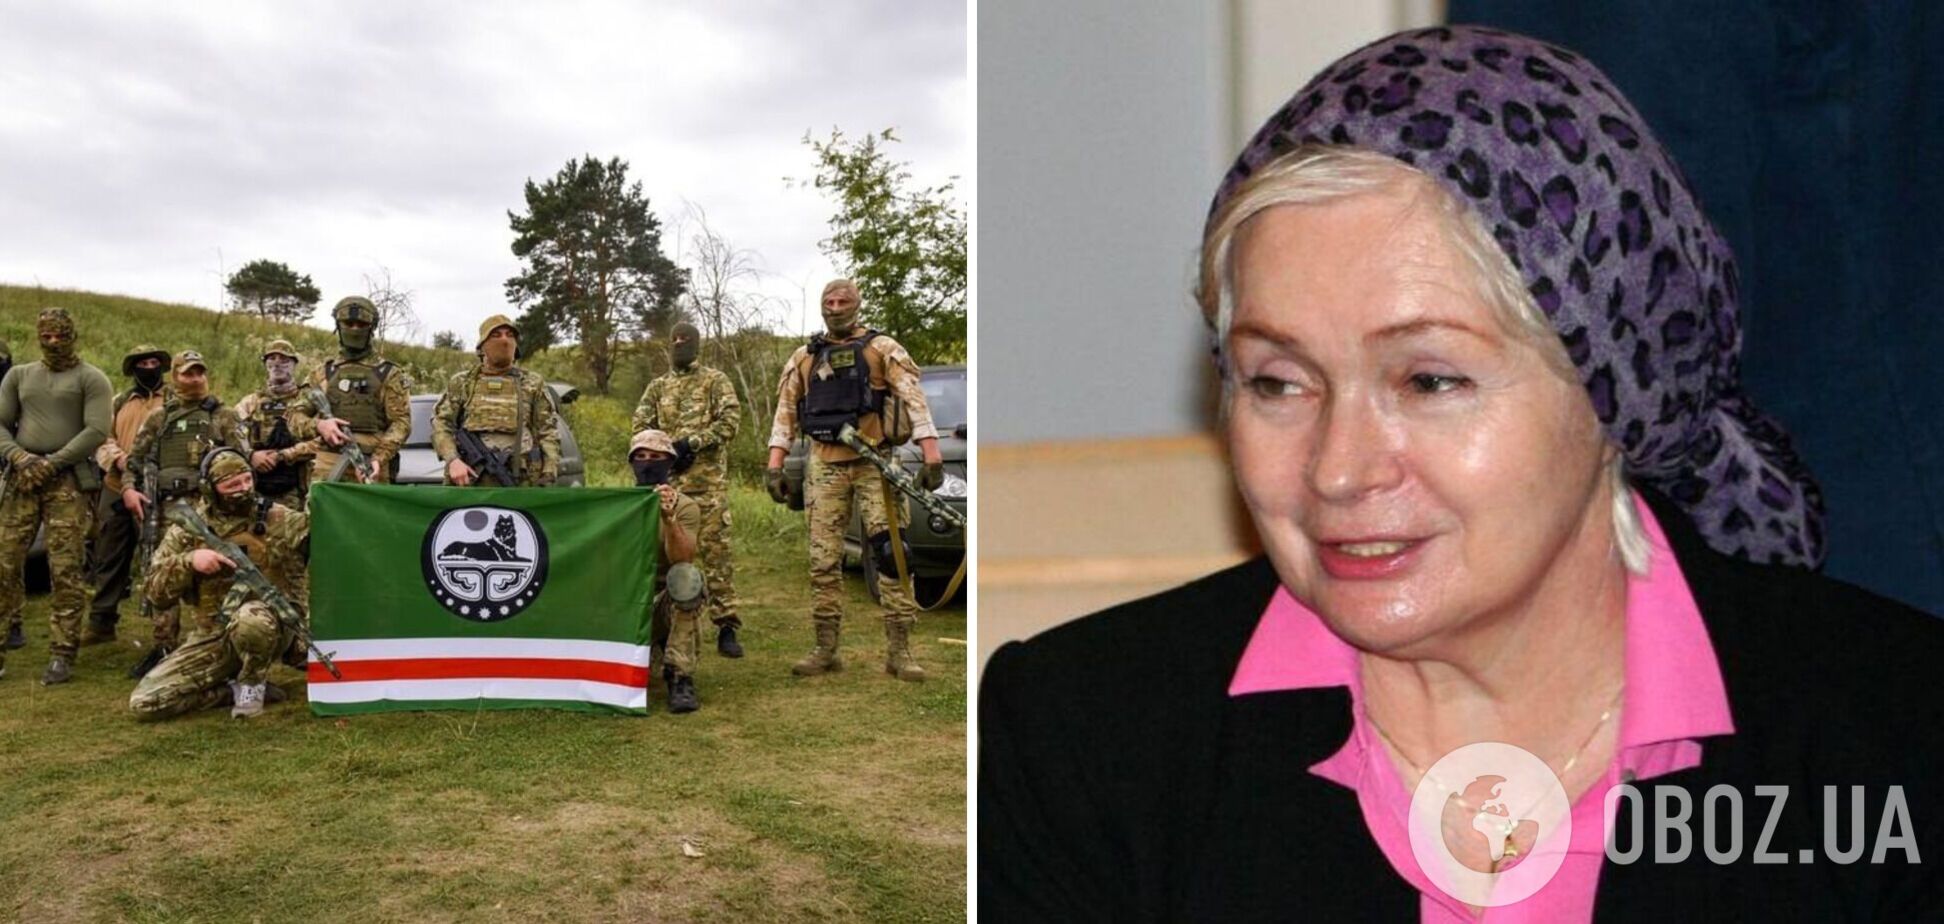 Українське Сонце сходить! Вдова Джохара Дудаєва закликала допомогти батальйону чеченських патріотів, які воюють за Україну  